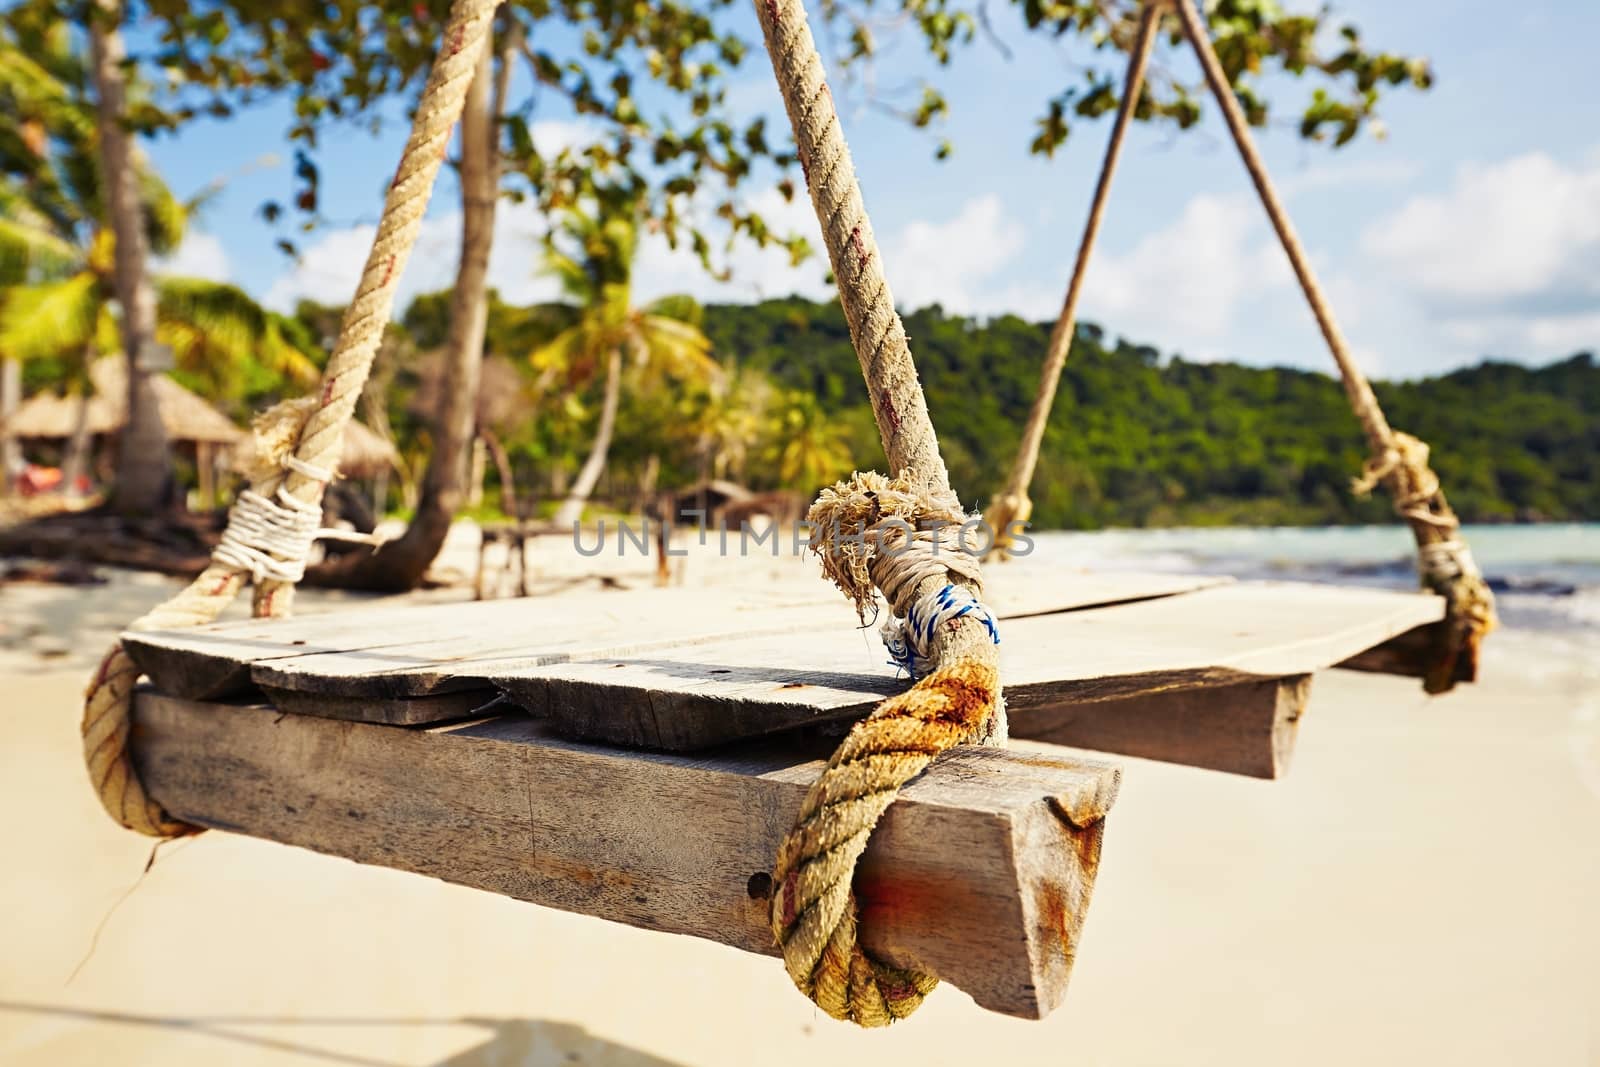 Swing on the idyllic beach - Vietnam